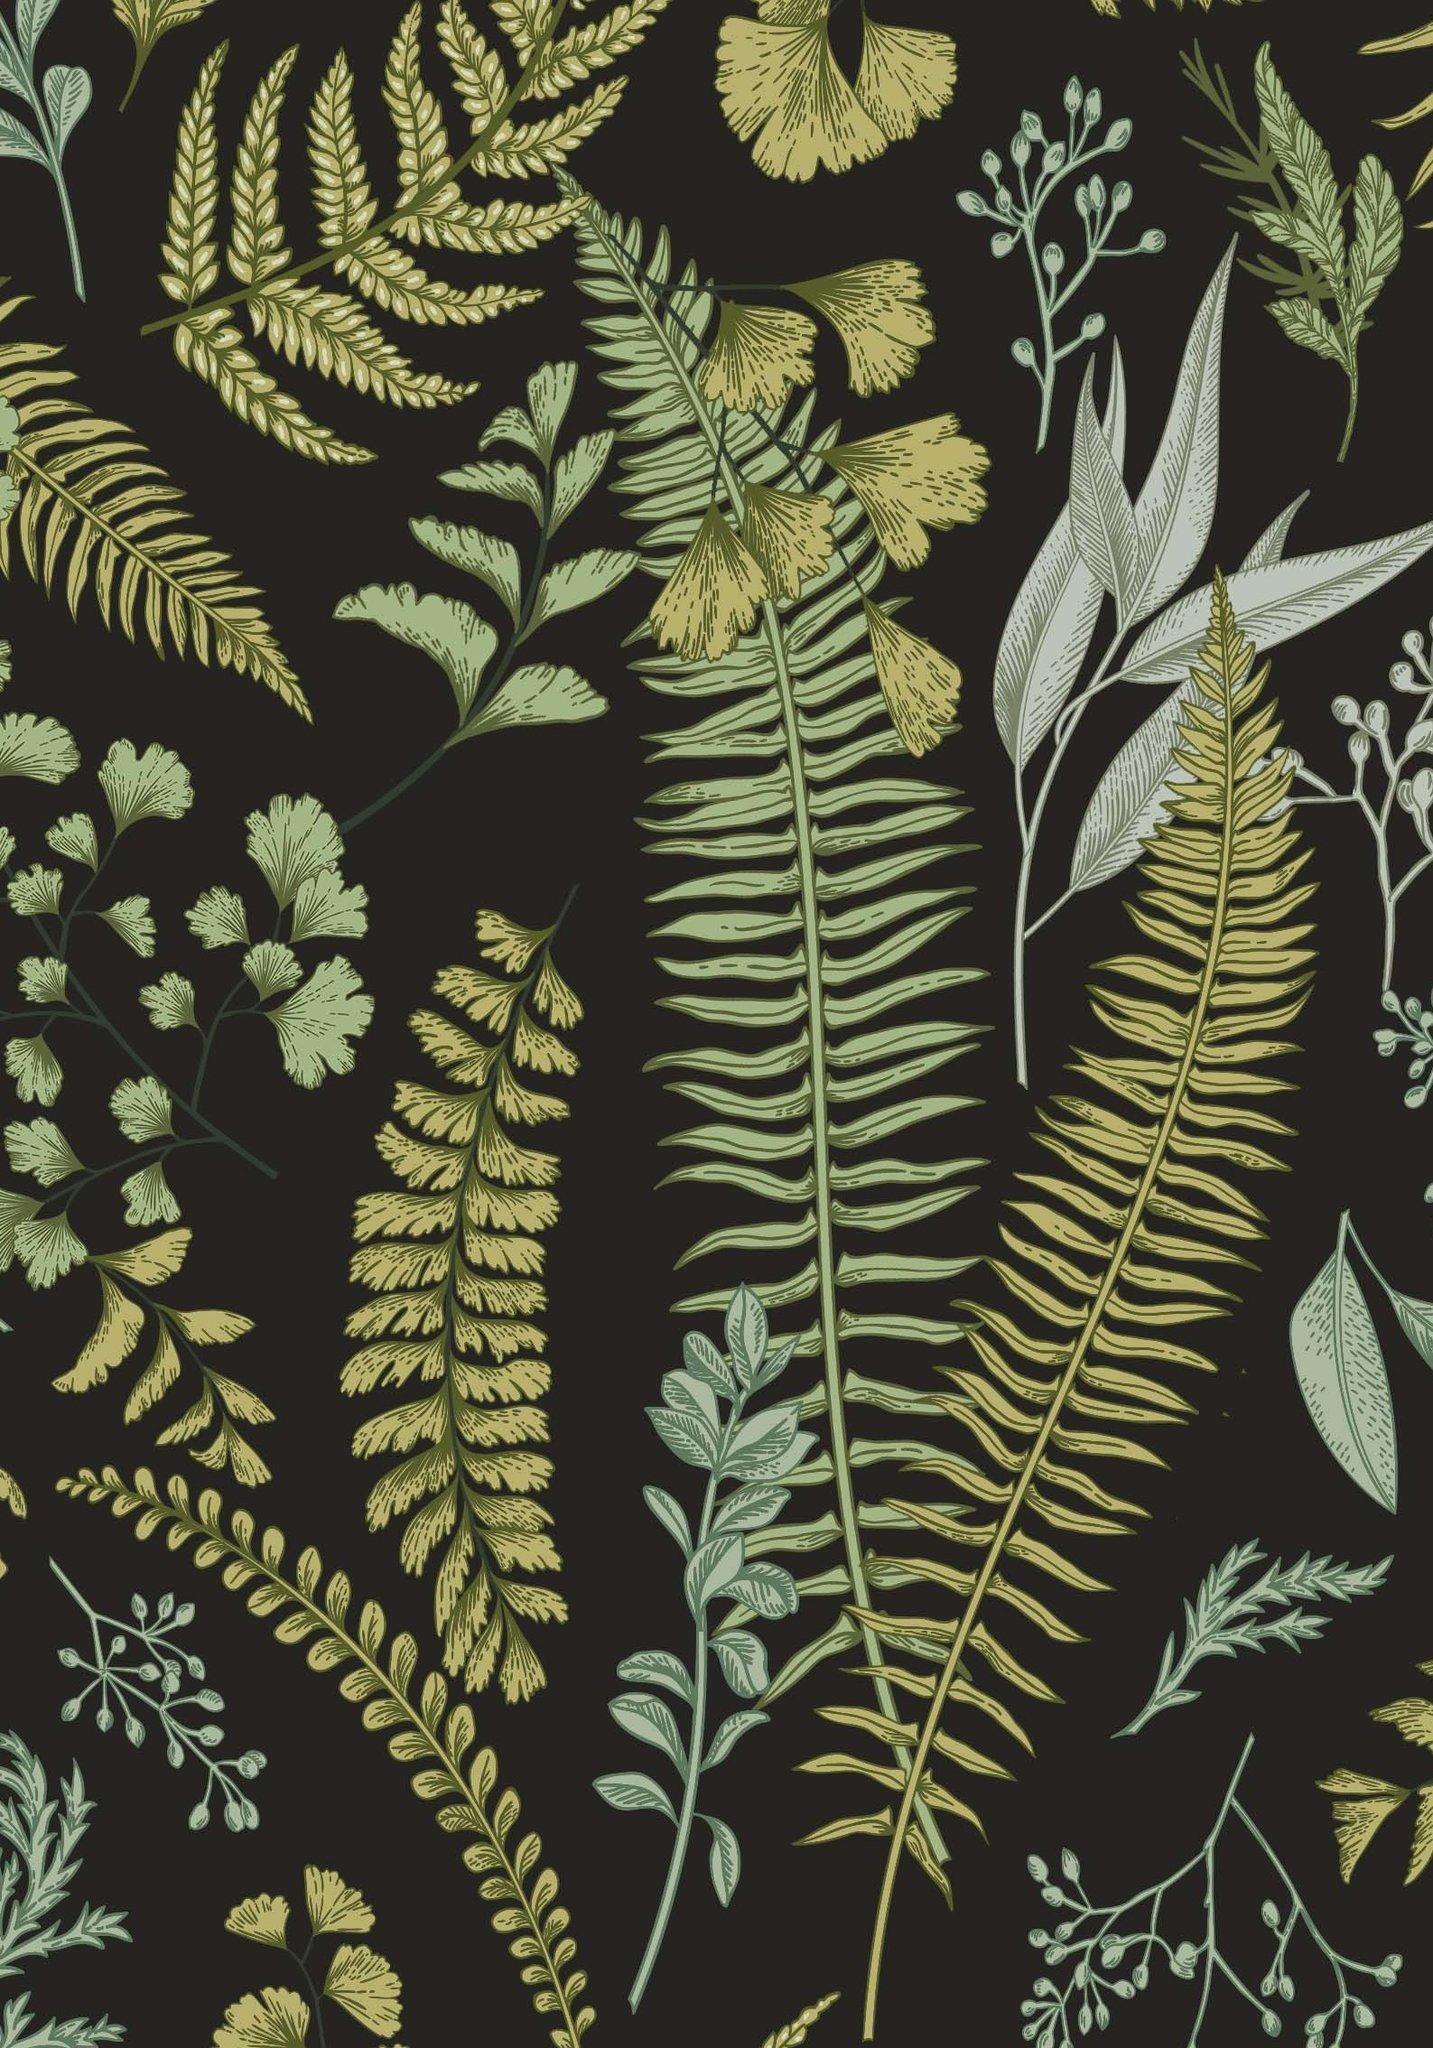 Dark botanical wallpaper